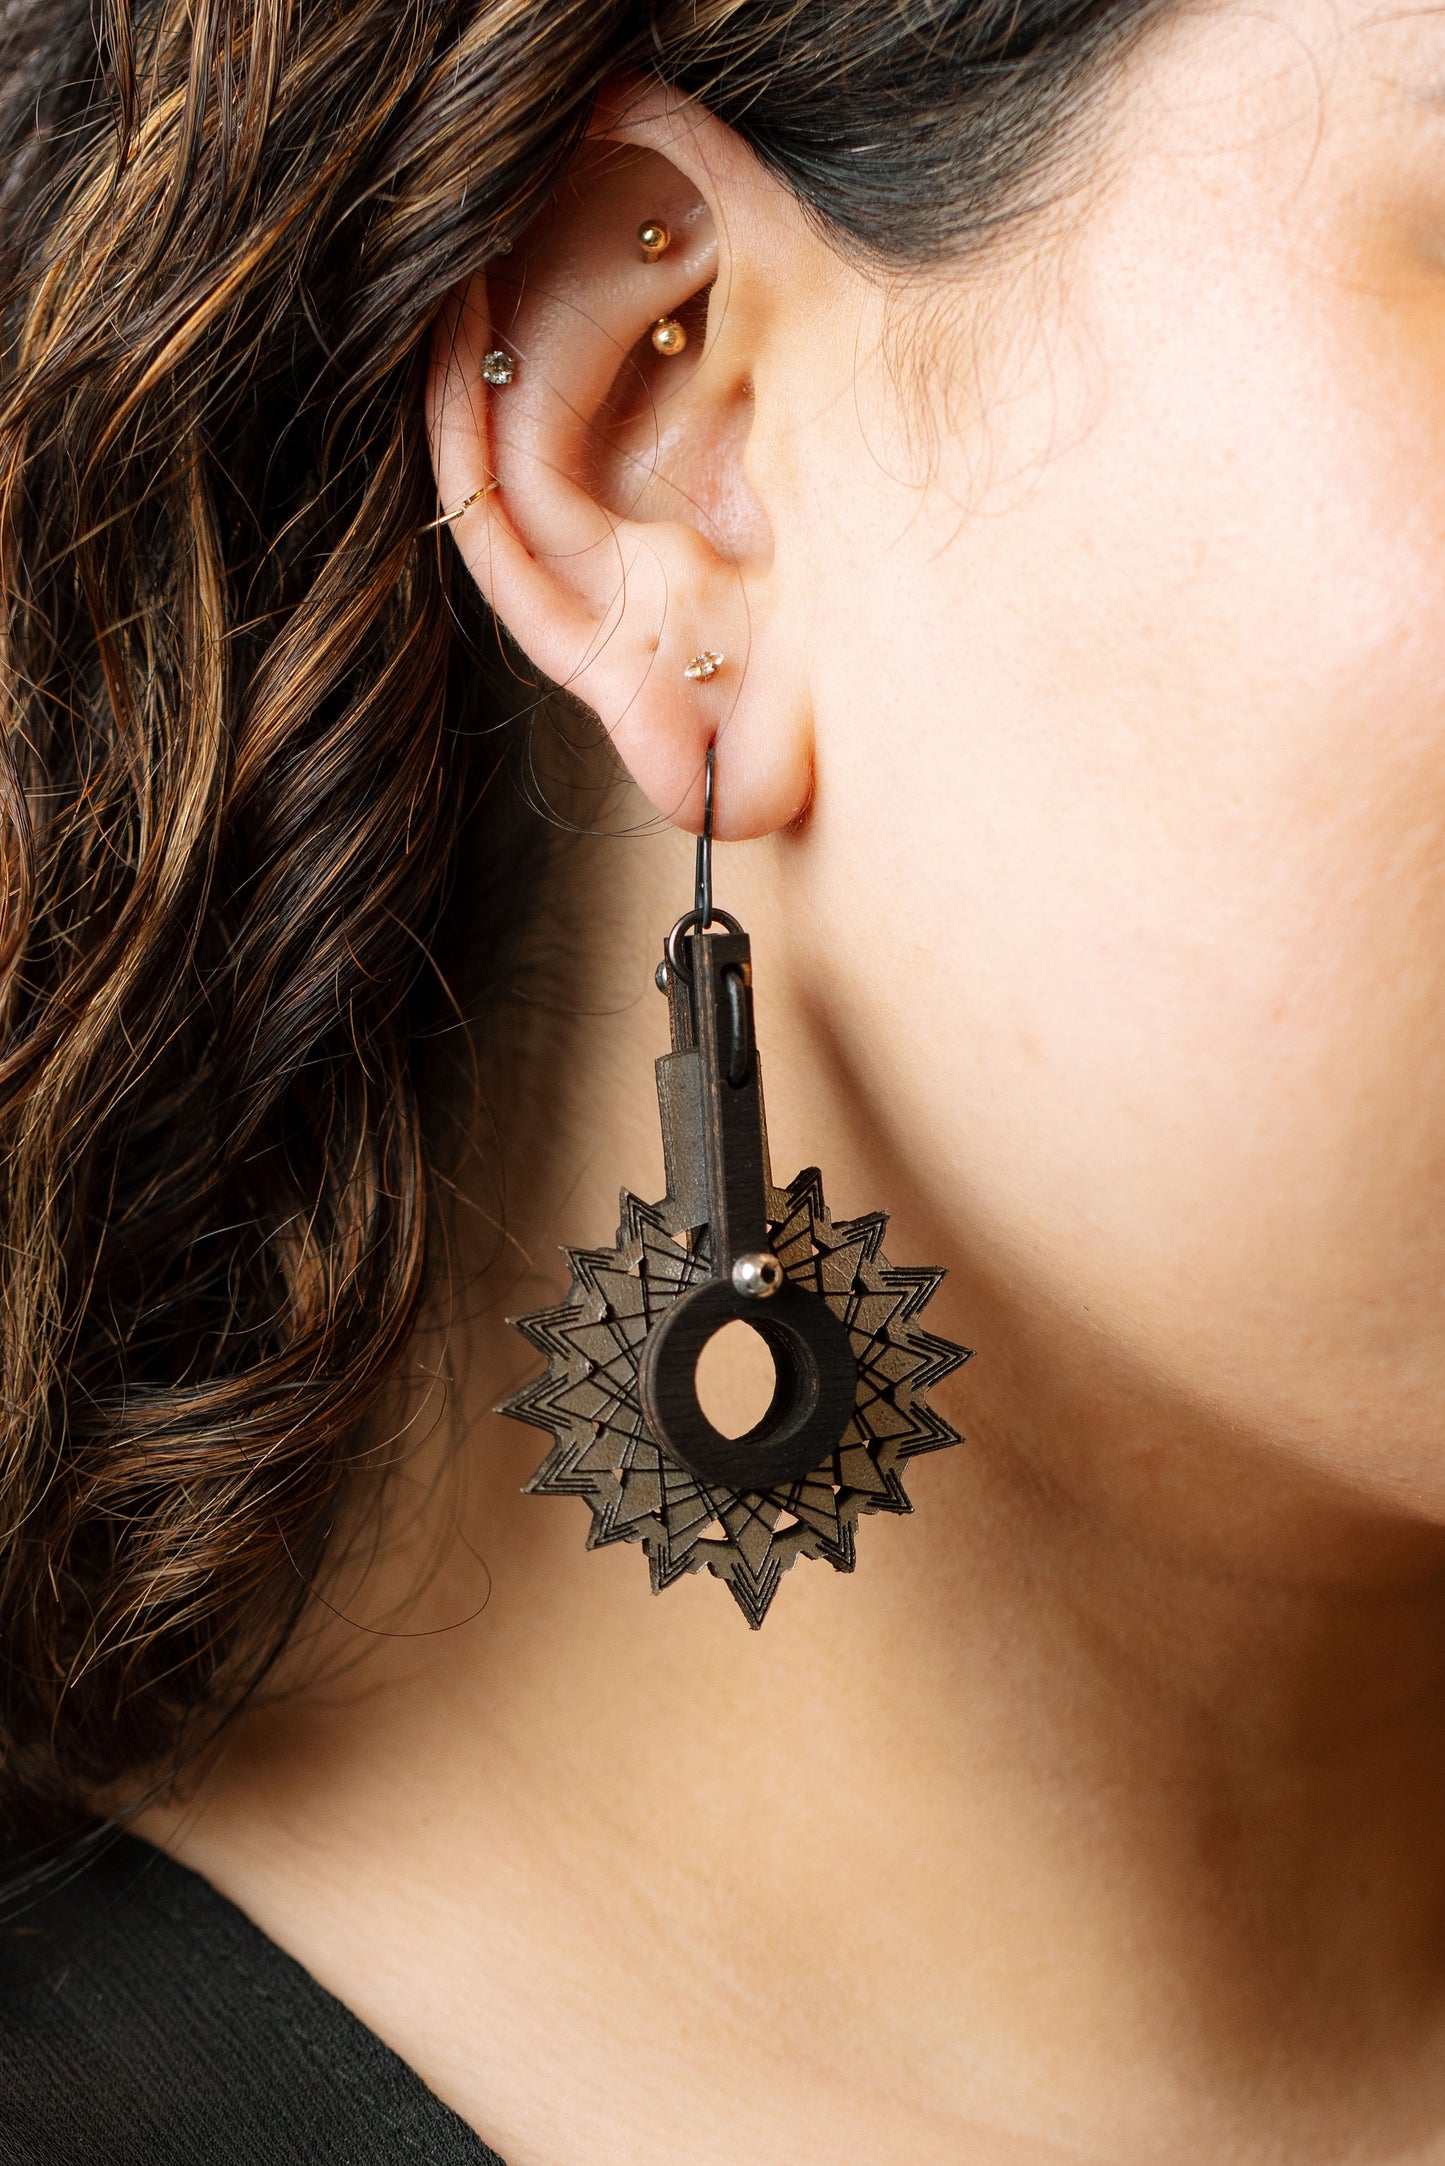 Starport earrings on model